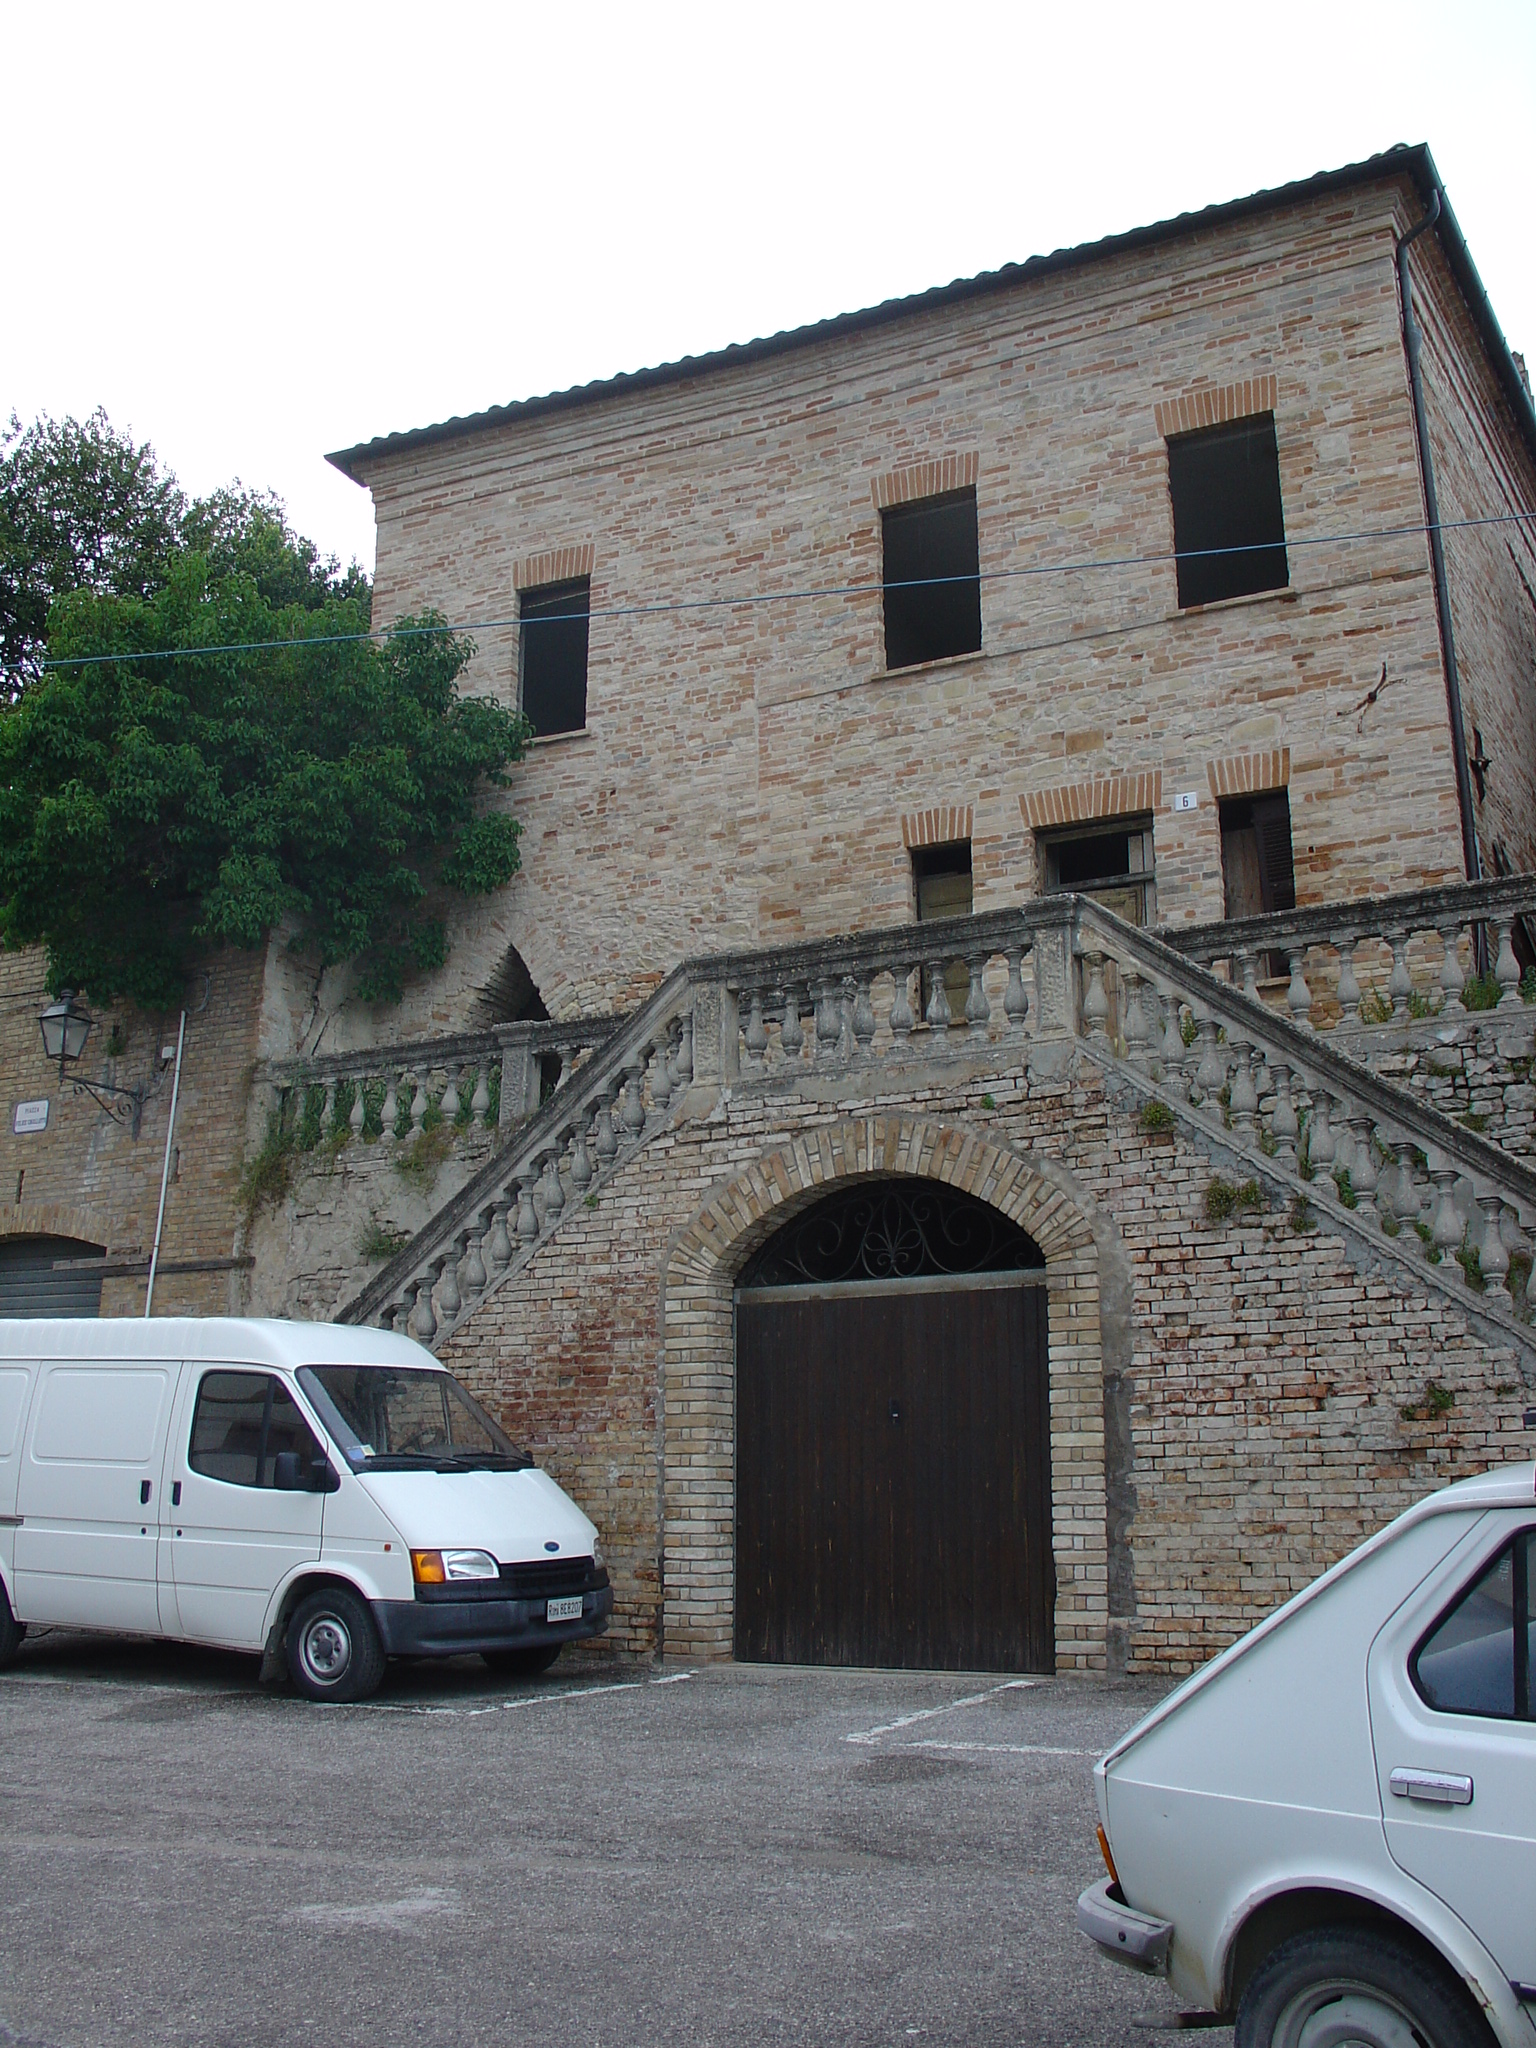 Palazzo signorile (palazzo, signorile) - Ortezzano (AP) 